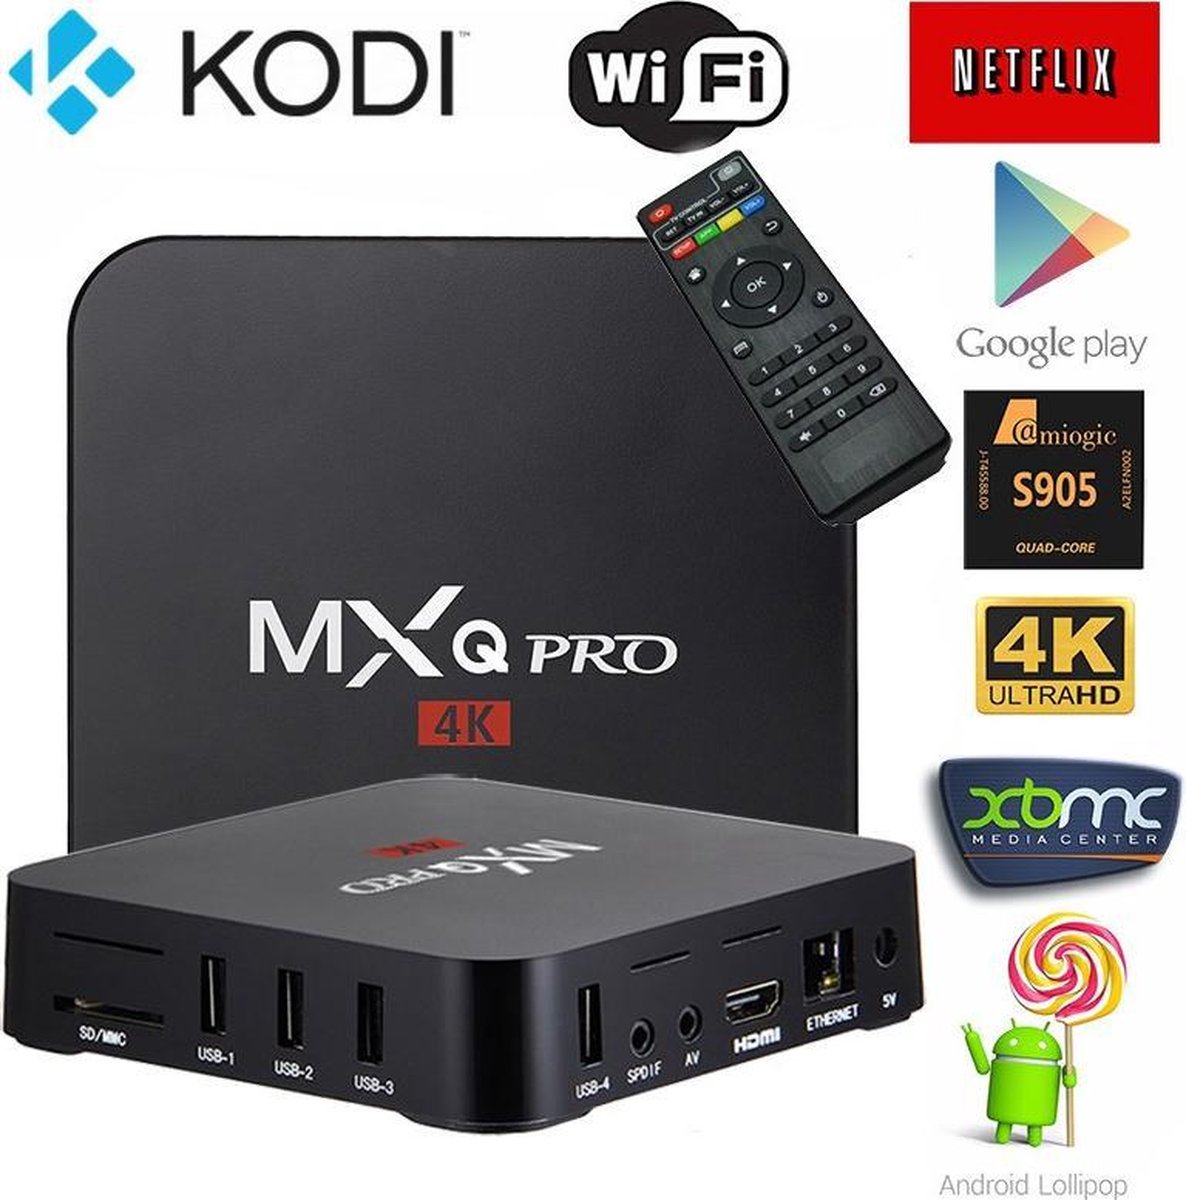 MXQ Pro 4k - S905x Processor - Android 7.1 | Kodi 18.1 | TV Box Model 2019 - MXQ Pro 4K